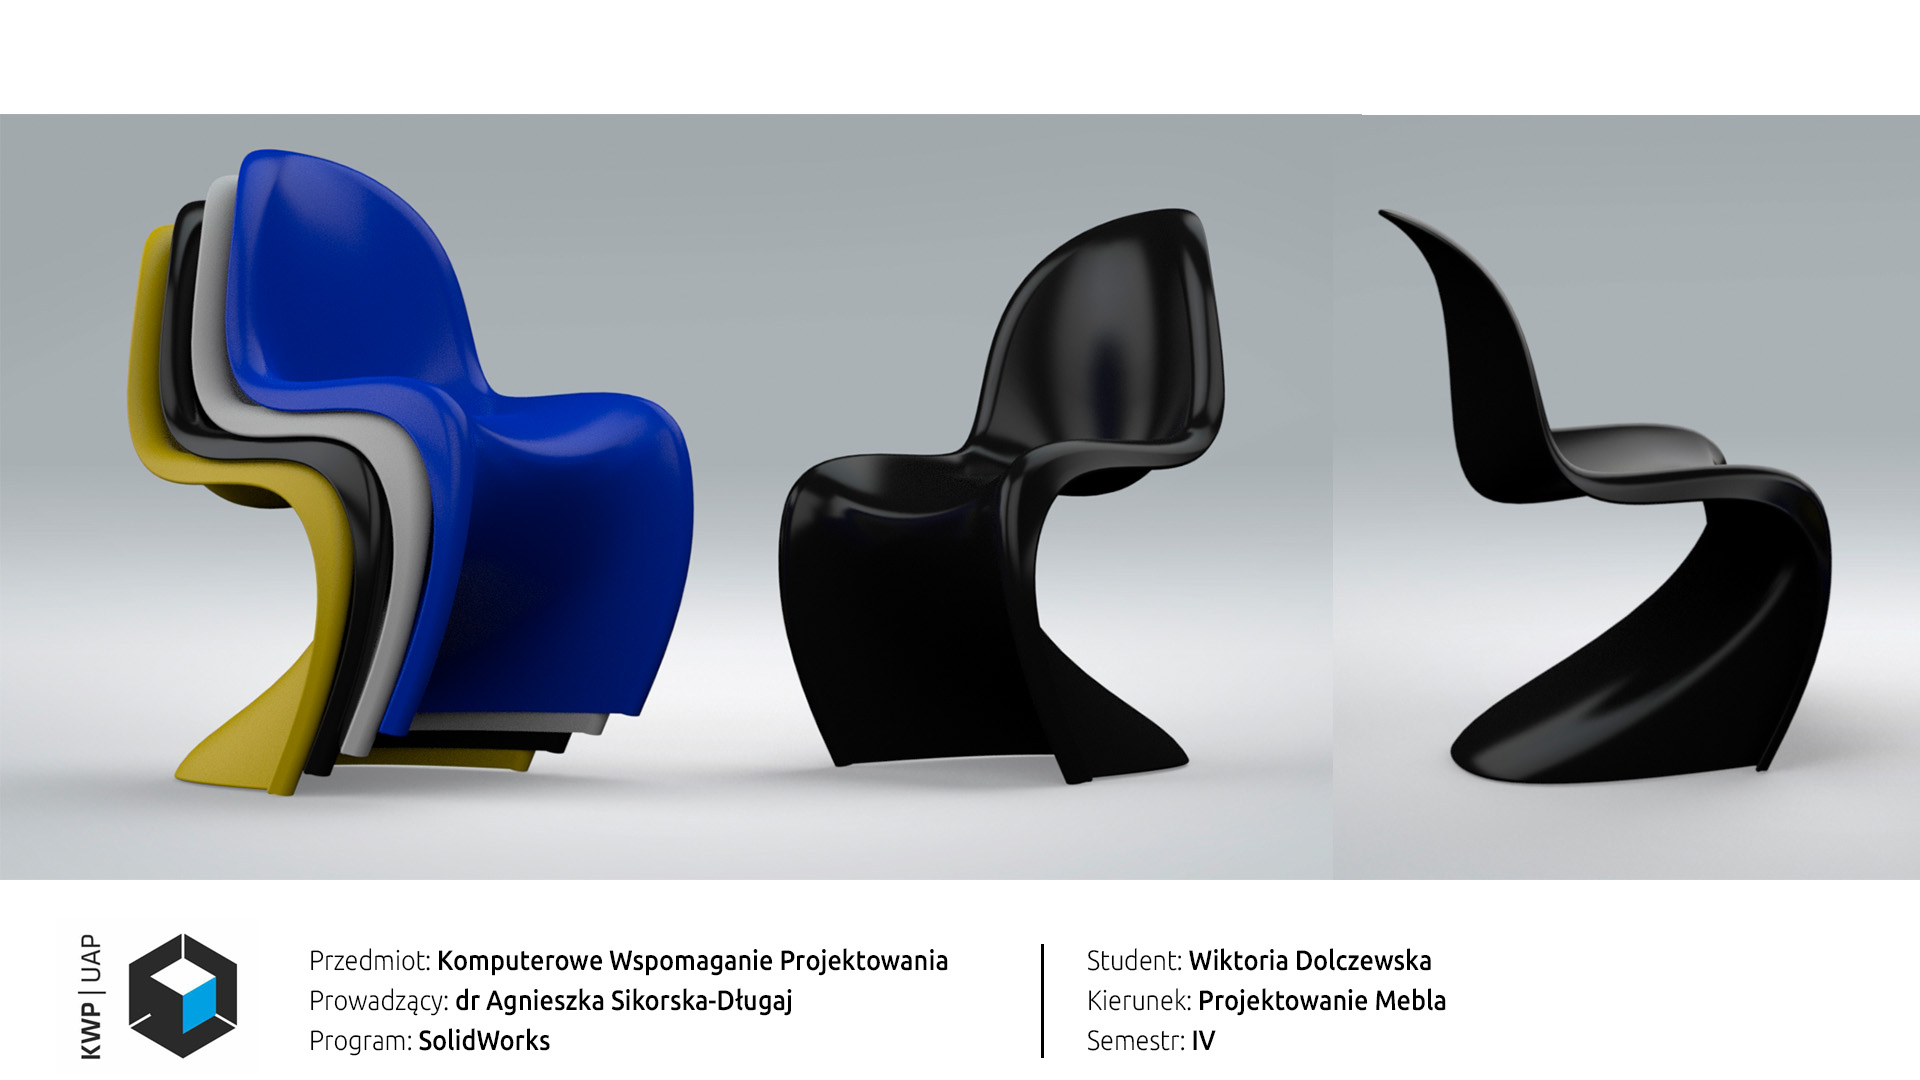 Rendery z programu SolidWorks. Model krzesła Panton w kolorze czarnym, niebieskim, żółtym i białym. Widok krzesła od frontu i z boku oraz w ustawieniu jeden na drugim. Tło biało-szary gradient.